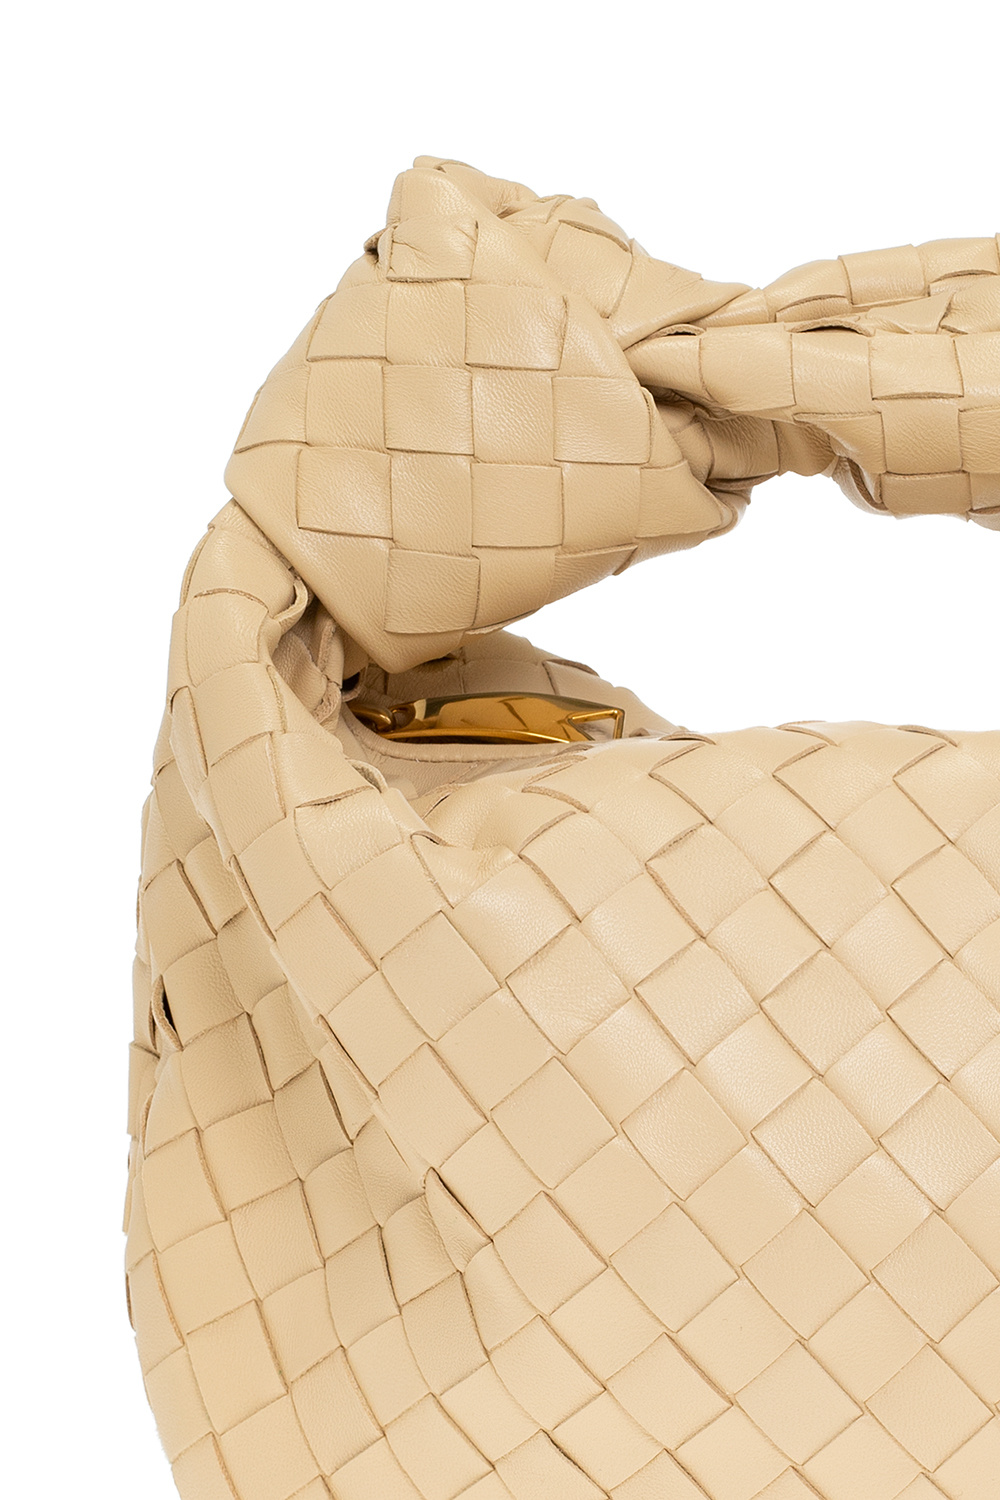 Bottega Veneta Women's Teen Jodie Woven Leather Bag